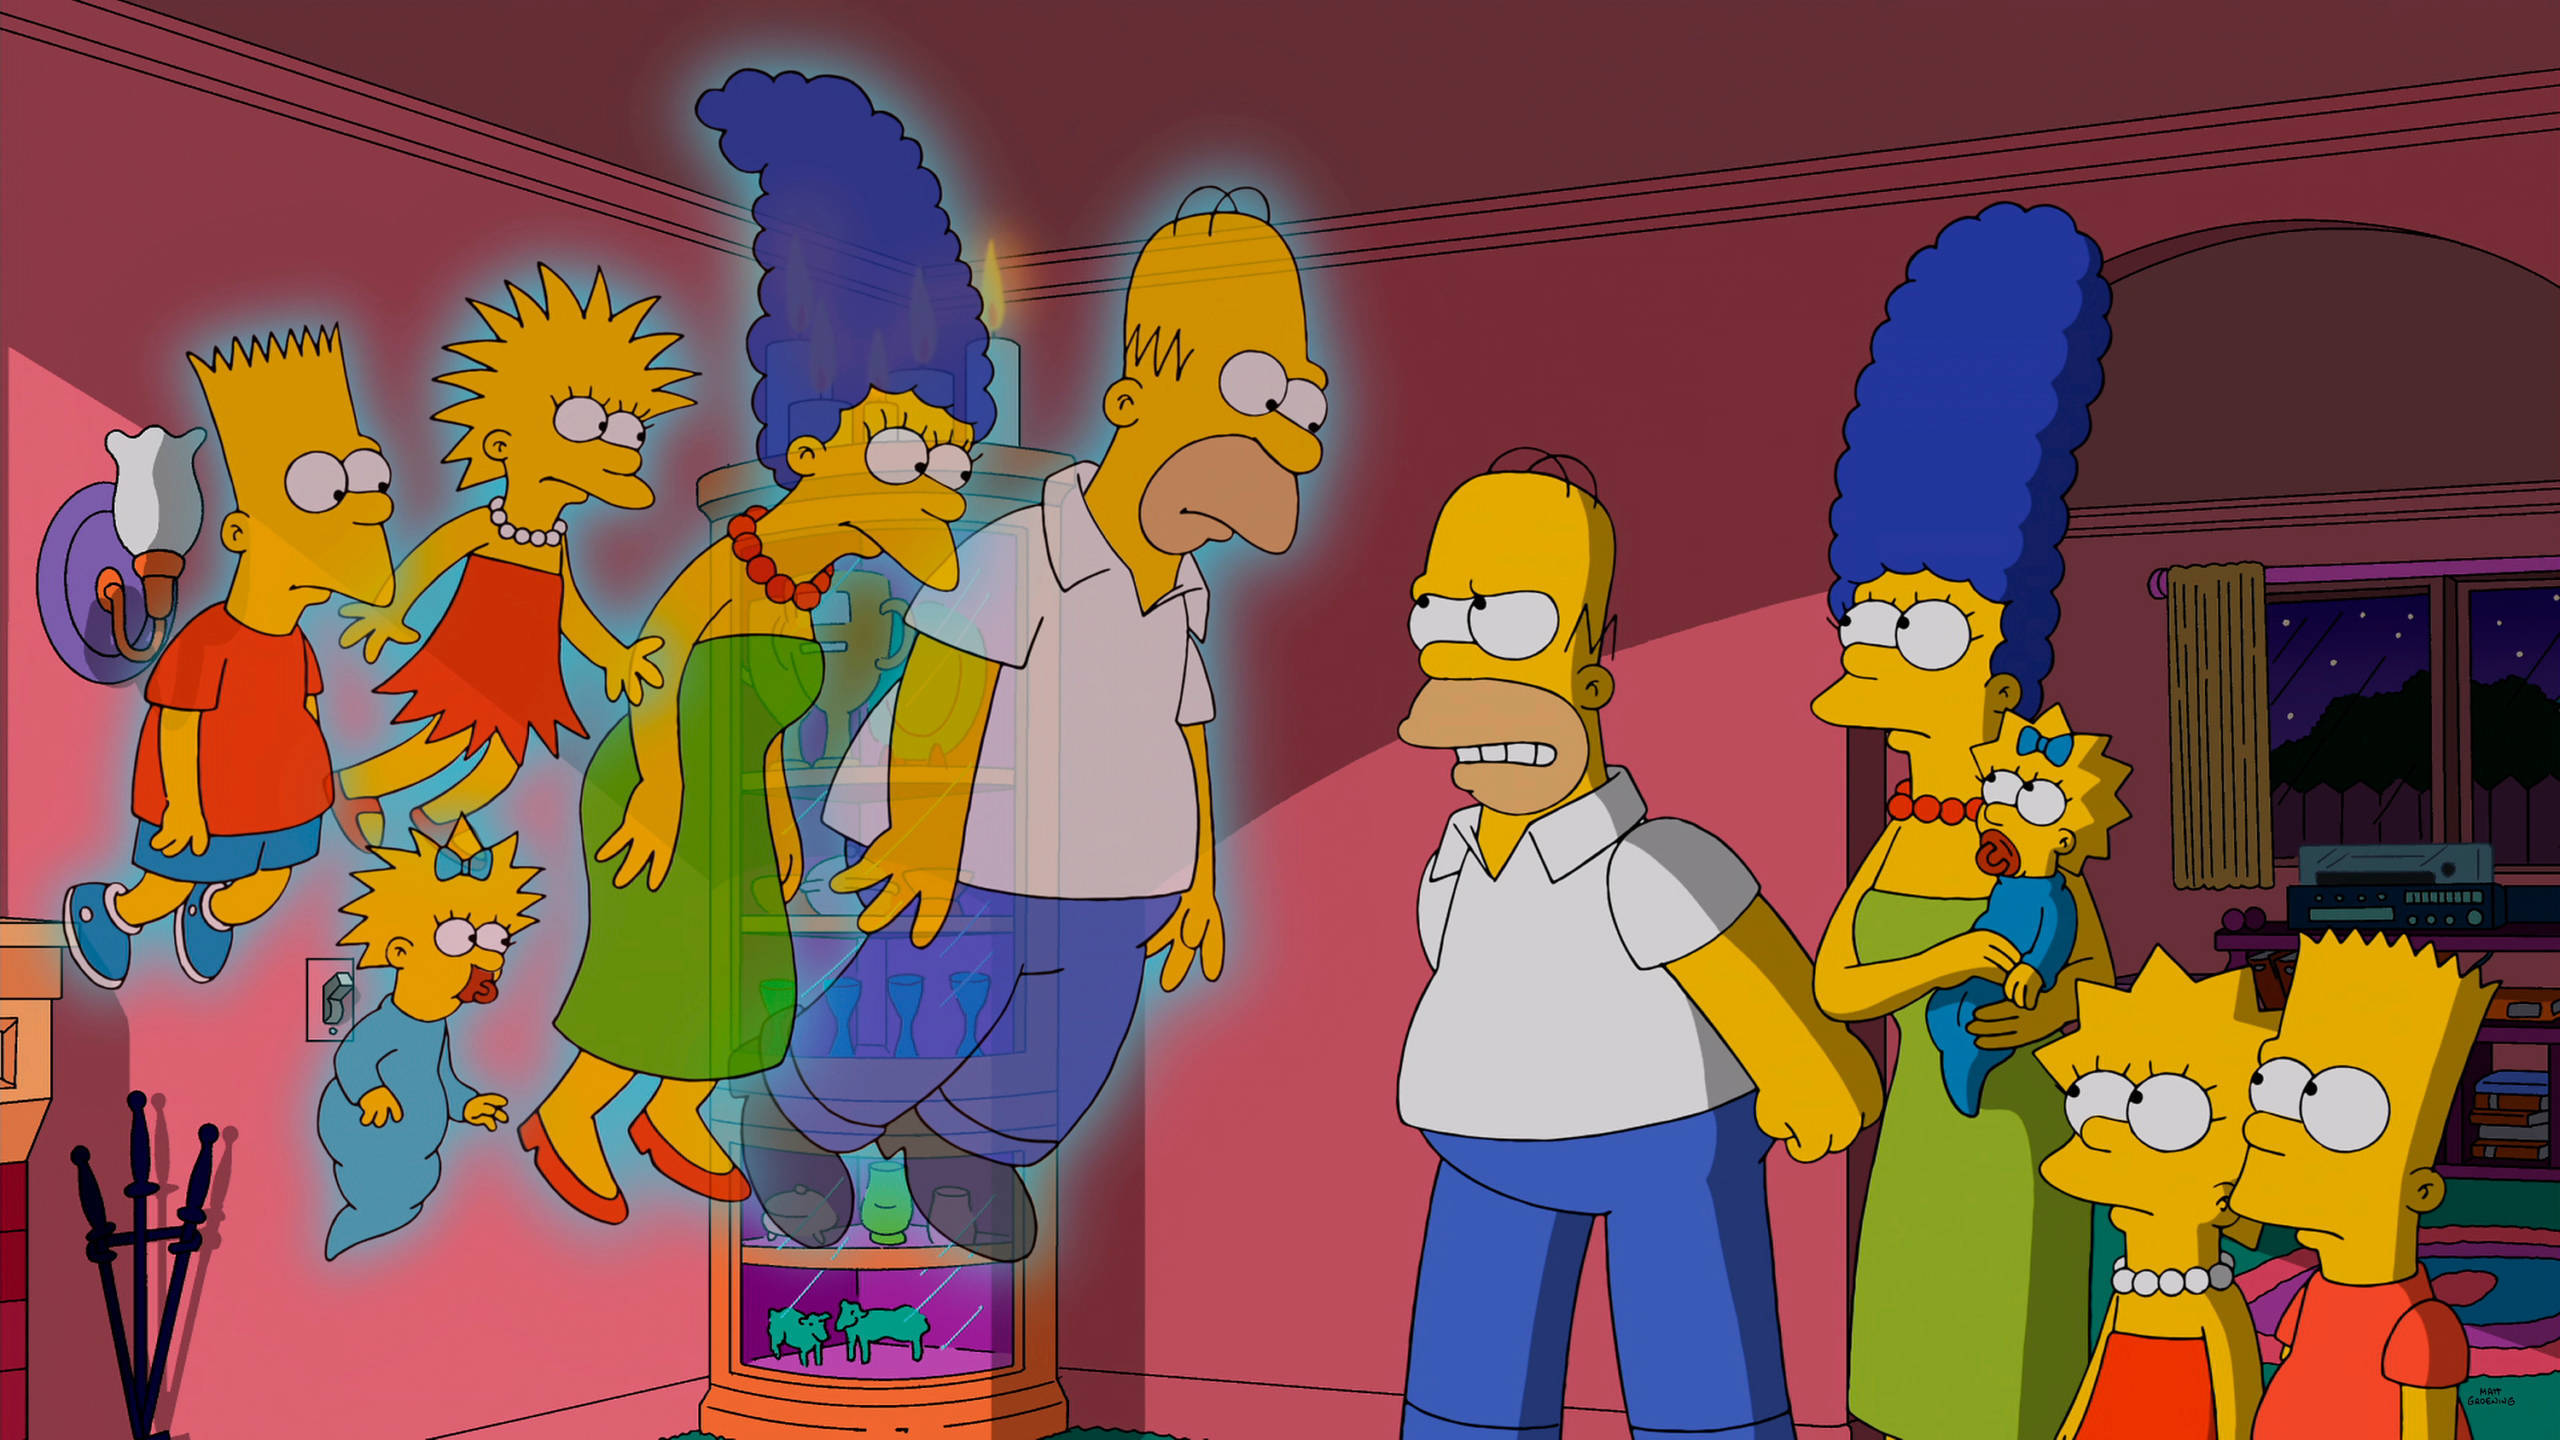 Vergangenheit und Zukunft der „Simpsons“ in einem Bild vereint